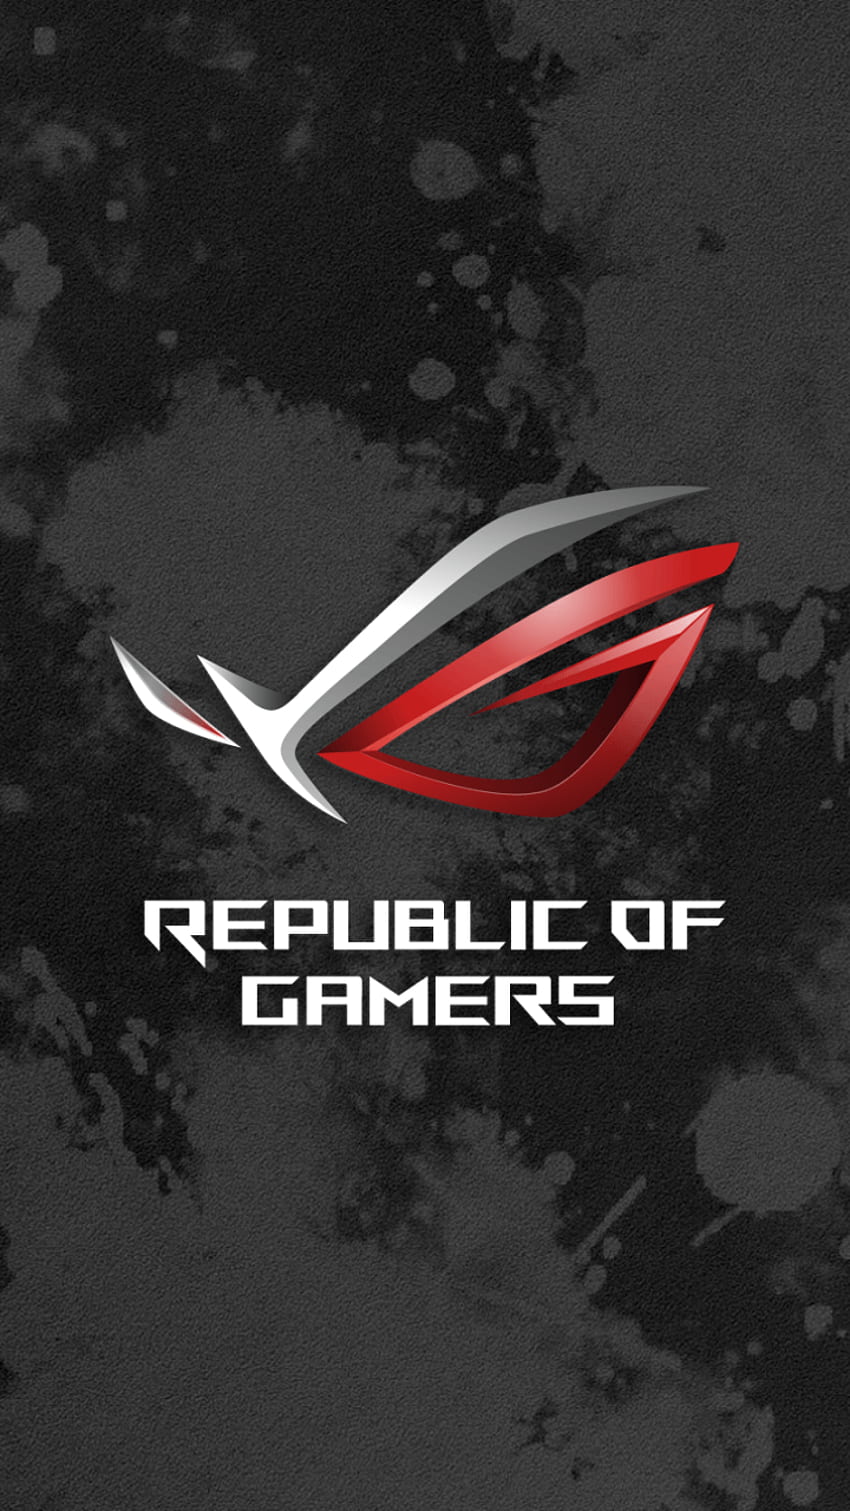 Mobile republik of gamer HD wallpapers | Pxfuel